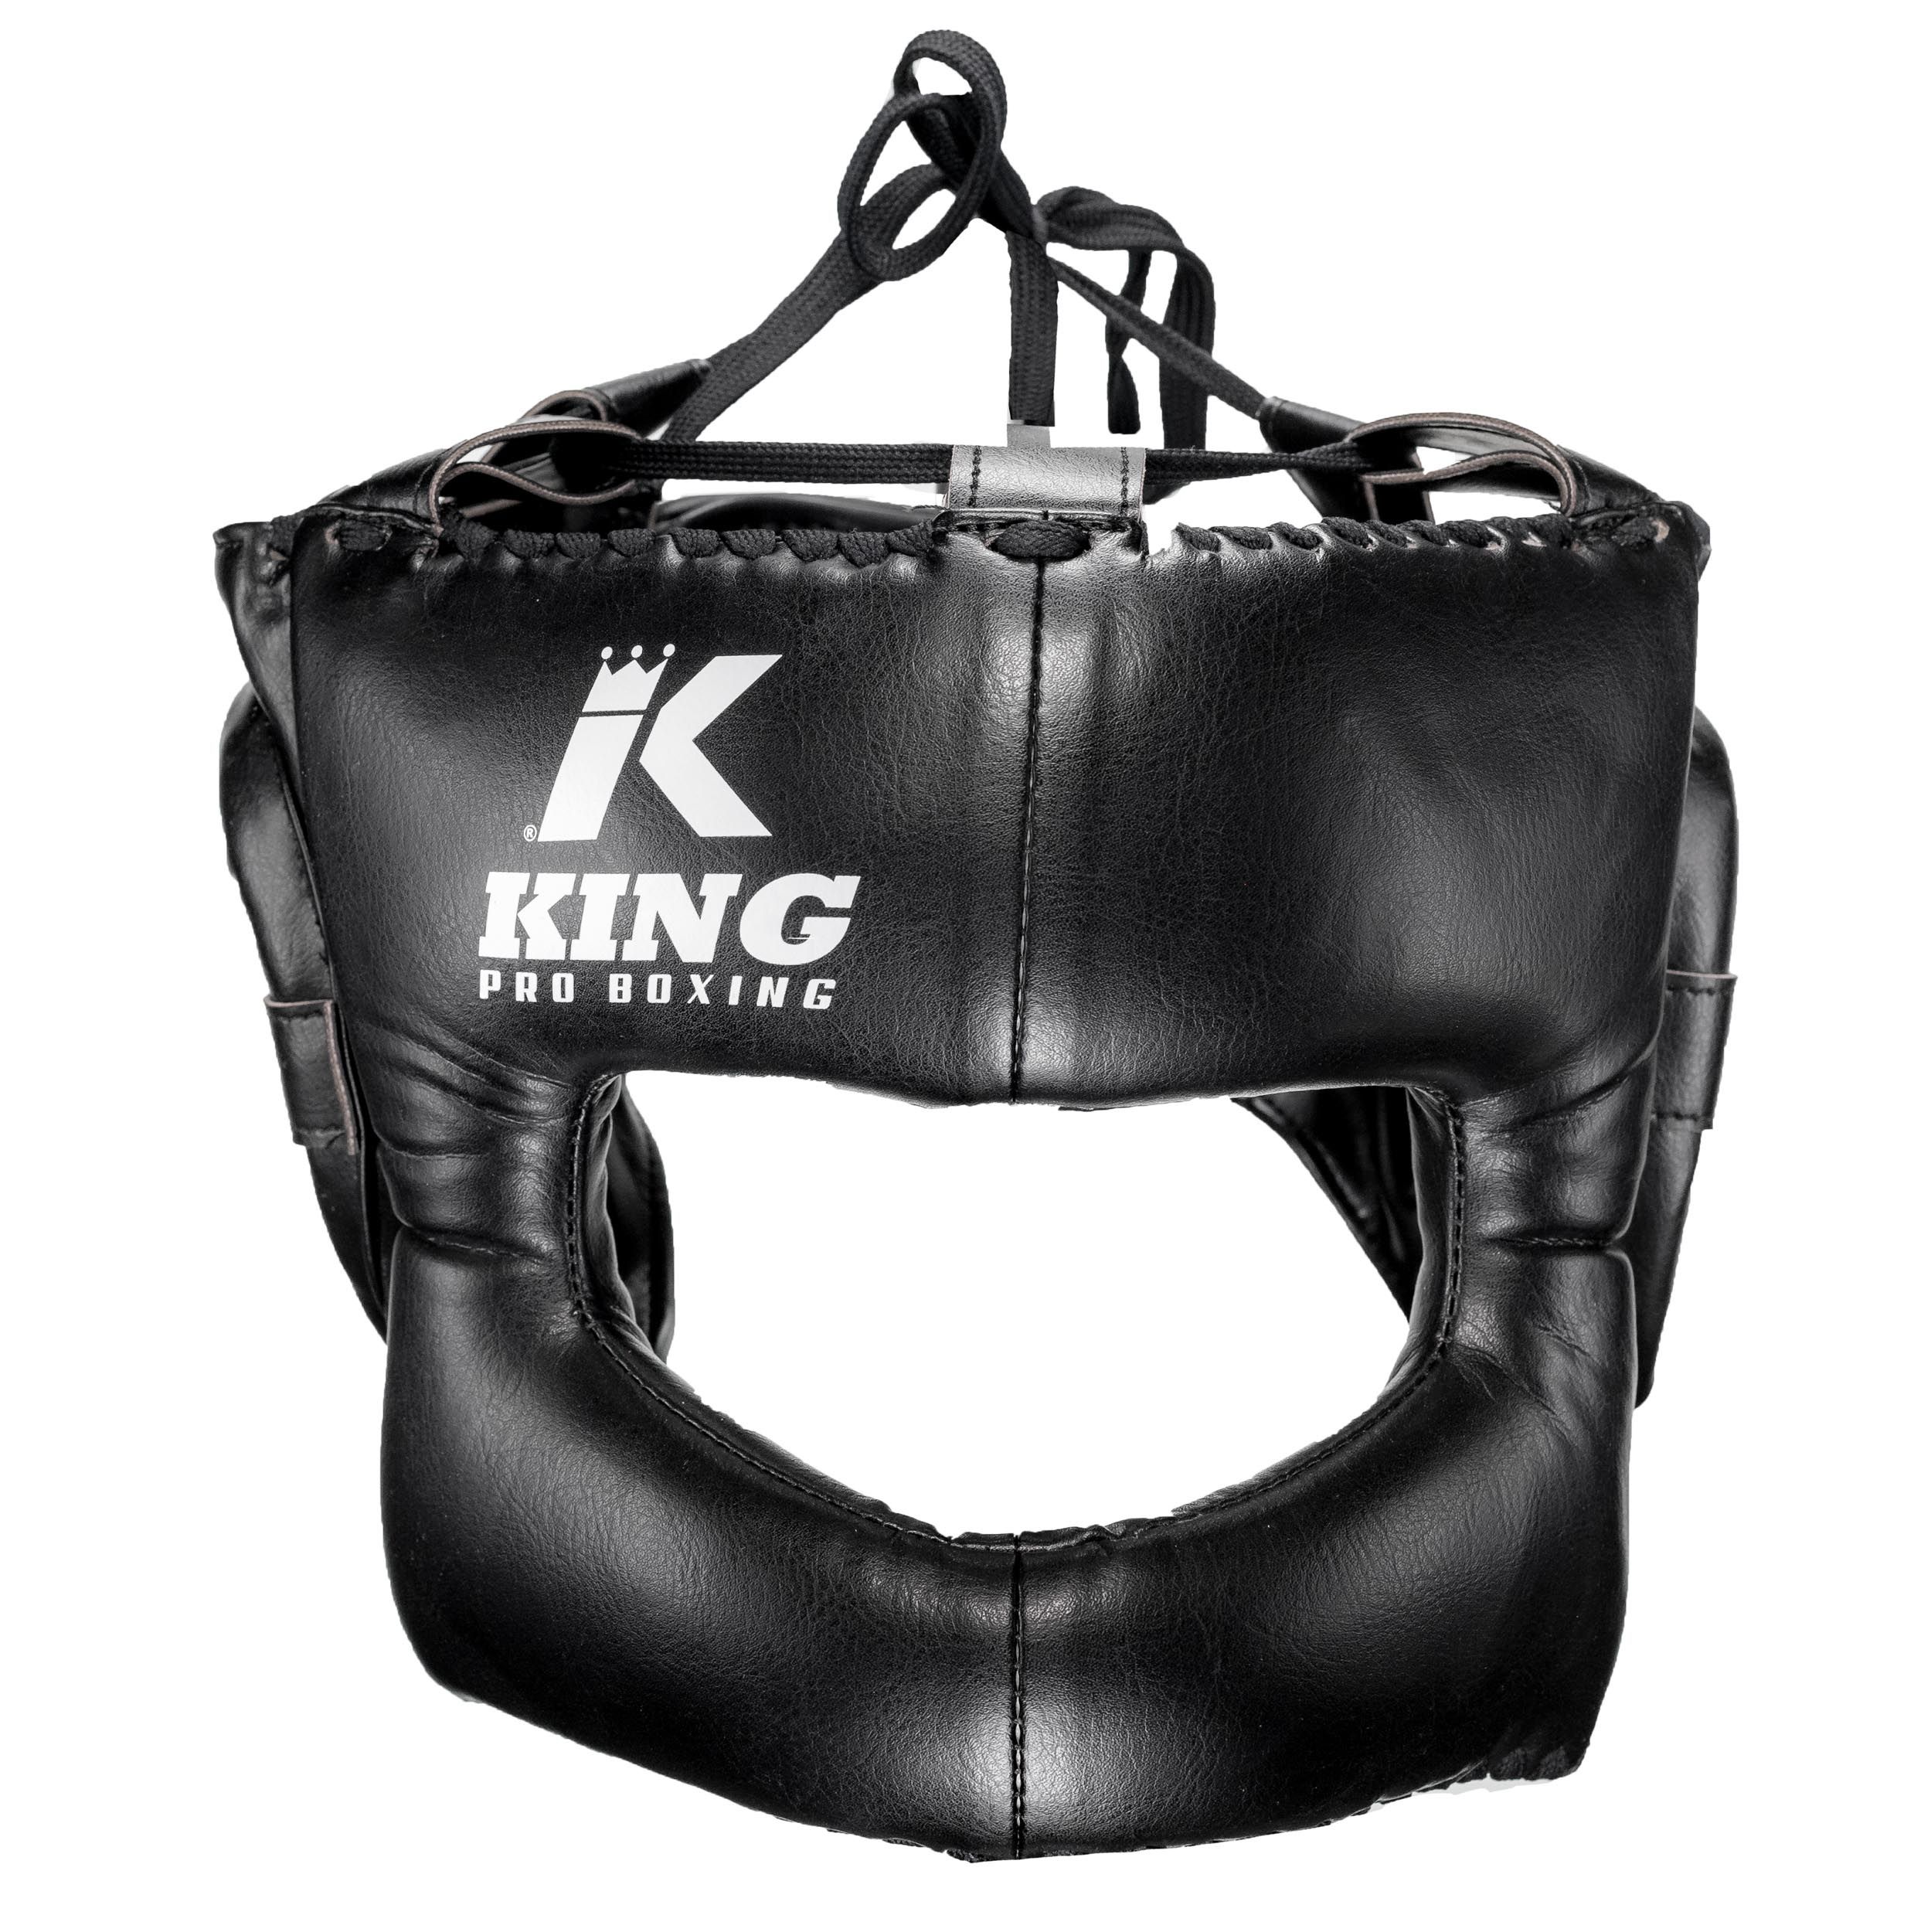 King Pro Boxing - Hoofdbescherming met neus bescherming - HG-PROBOX